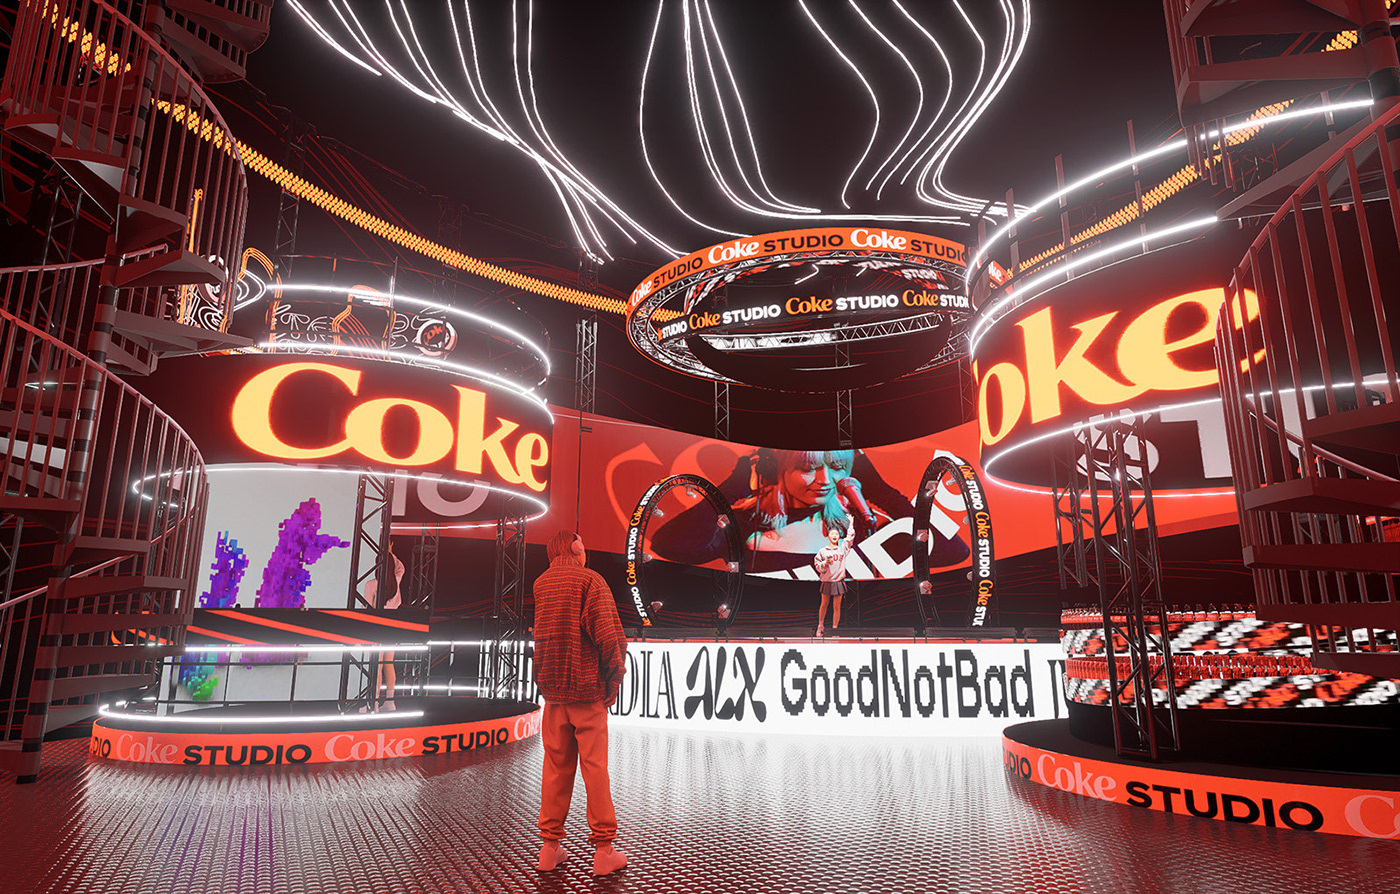 Coca-Cola publicidad marca Brand Design Advertising  festival design Event music industrial design  Render